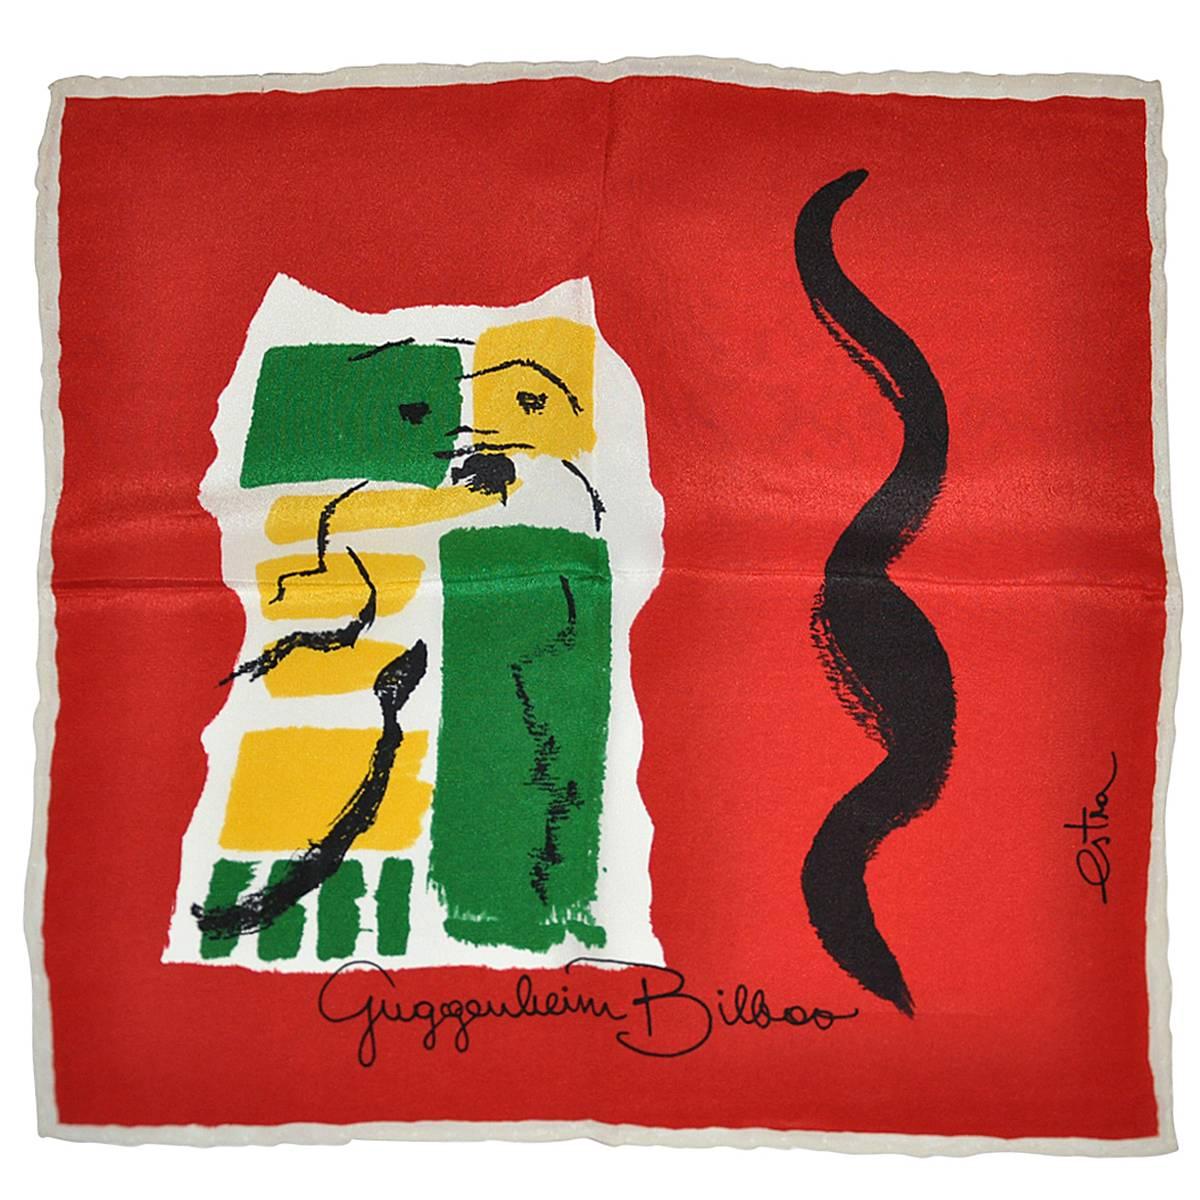 Rare Estra Bold Vividly Detailed  "Guggenheim Bilboo" Silk Handkerchief For Sale